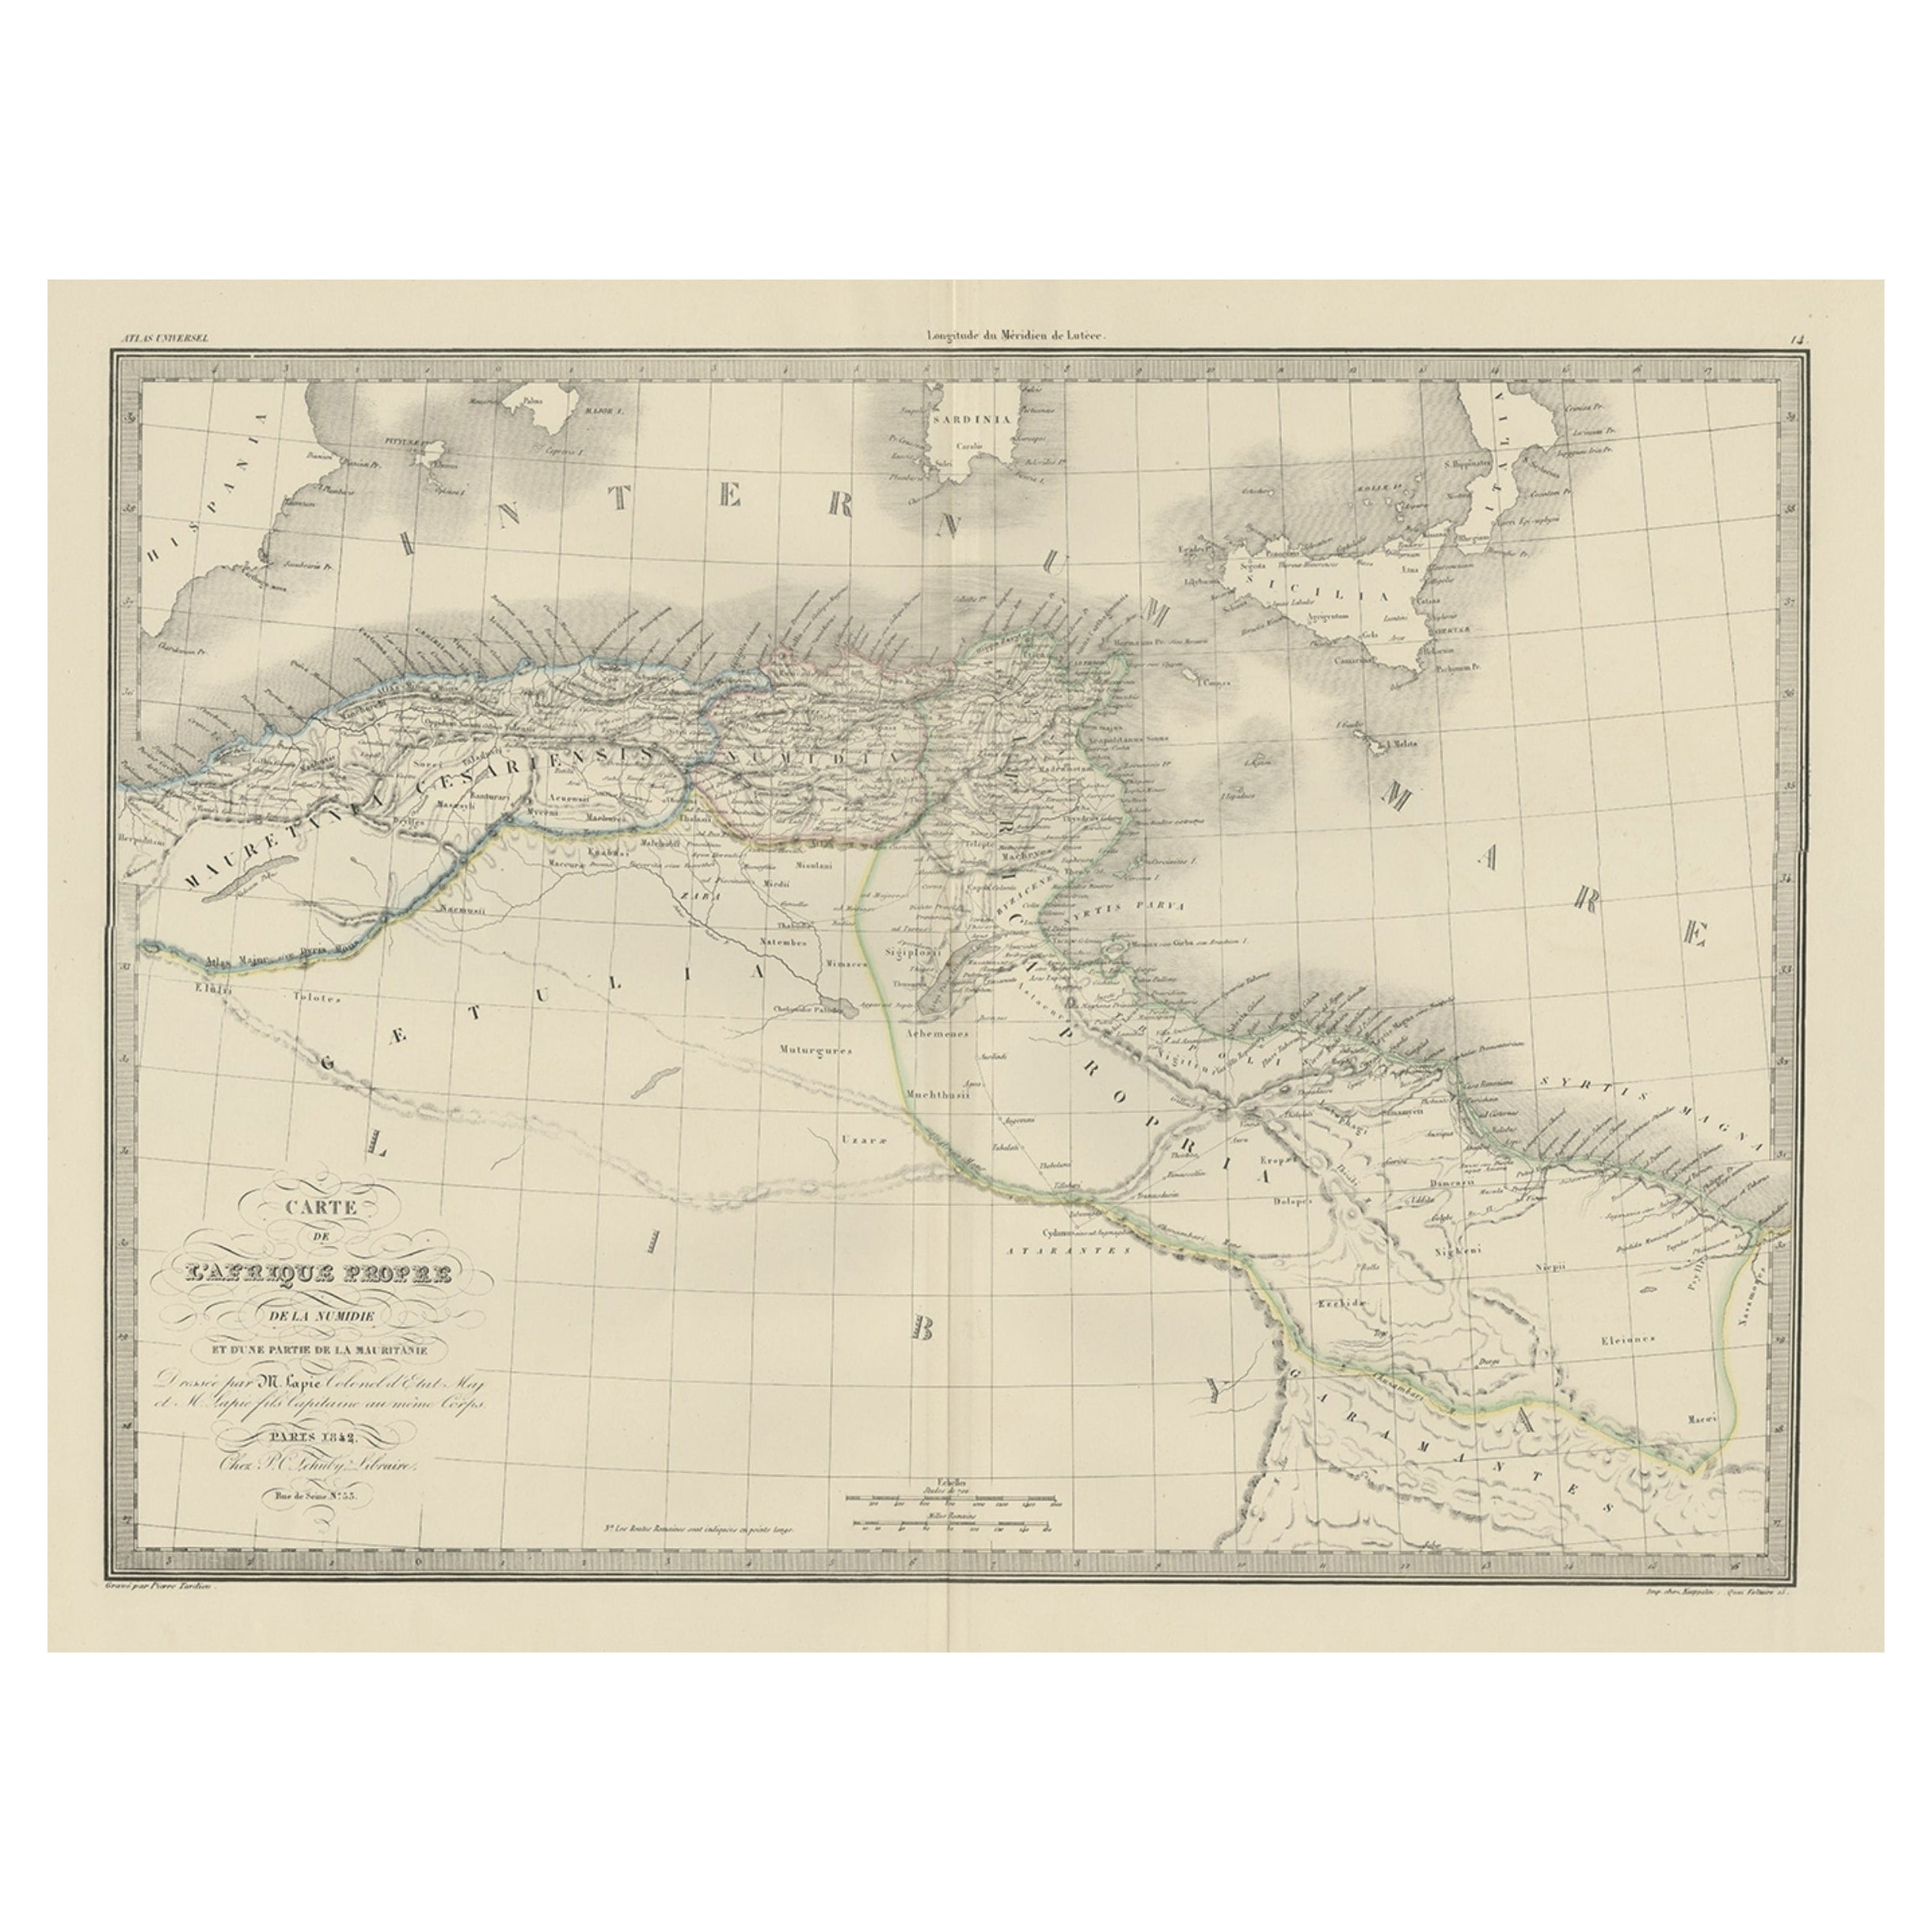 The Empires of Mauritania, Carthage & Numidia 'Barbary Coast', Africa, 1842